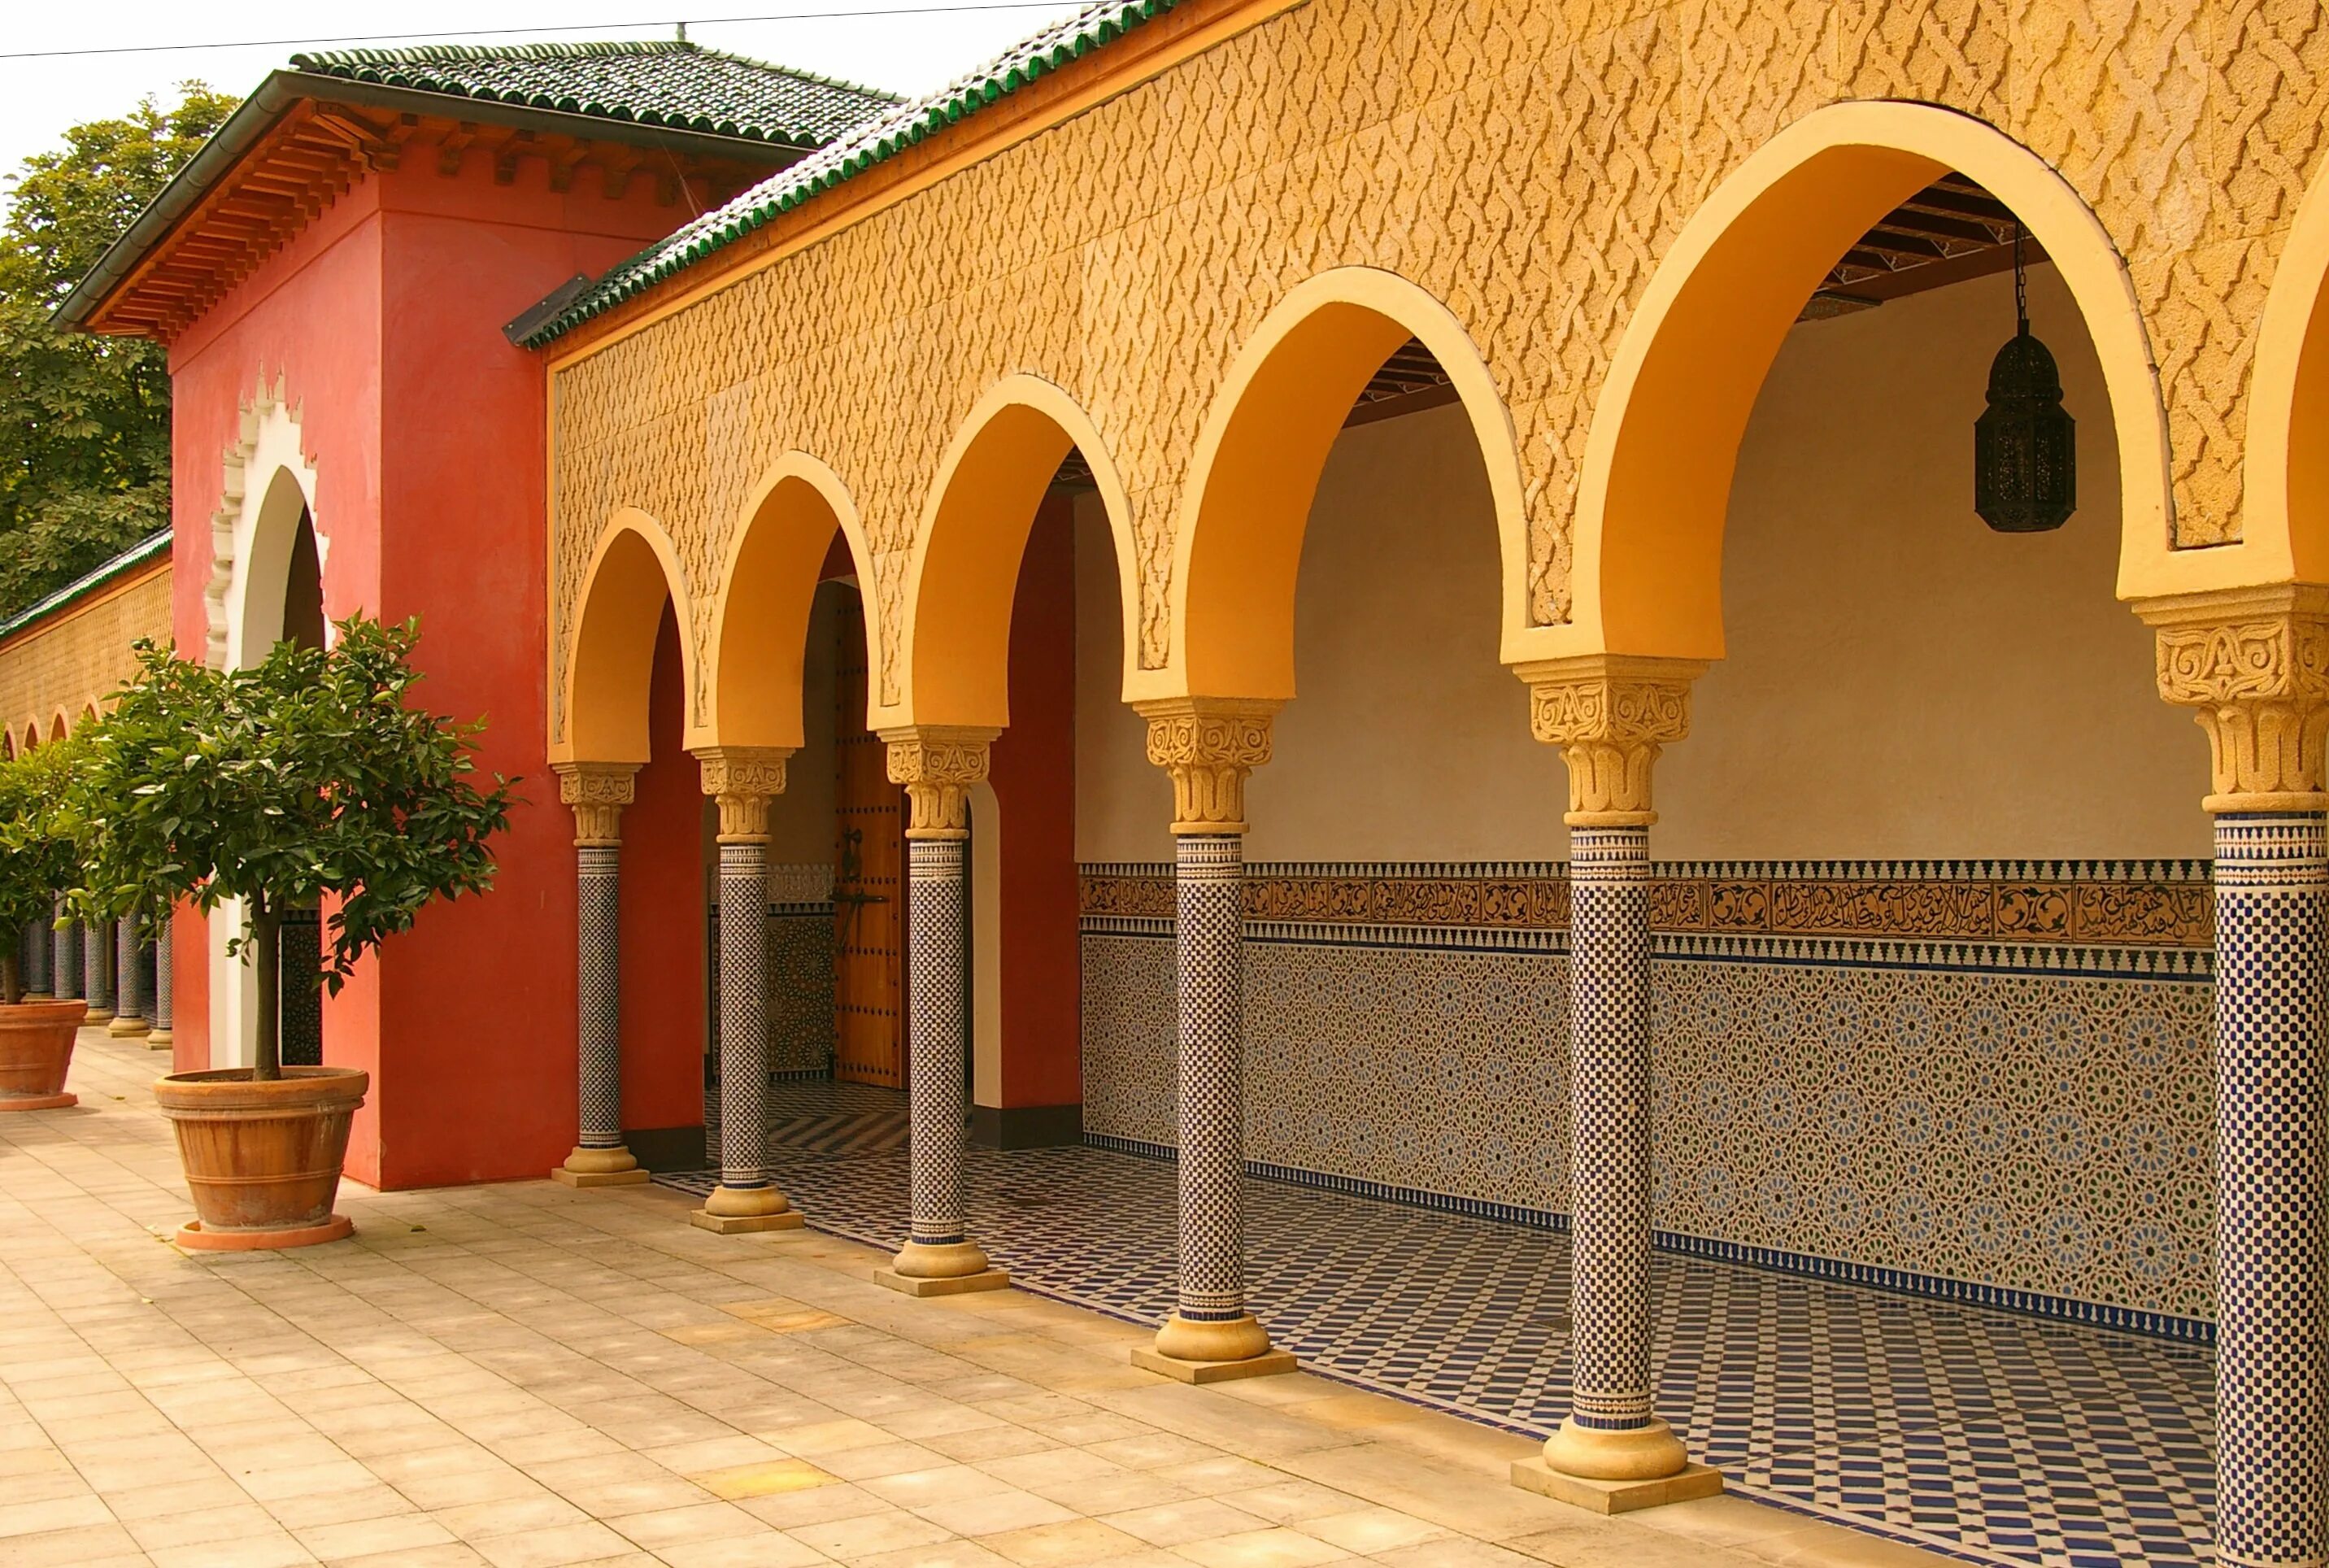 Восточная улица купить. Мавританская архитектура Марокко. Марокко мавританские арки архитектура. Мавританский стиль в архитектуре Марокко. Здания в мавританском стиле в Марокко.